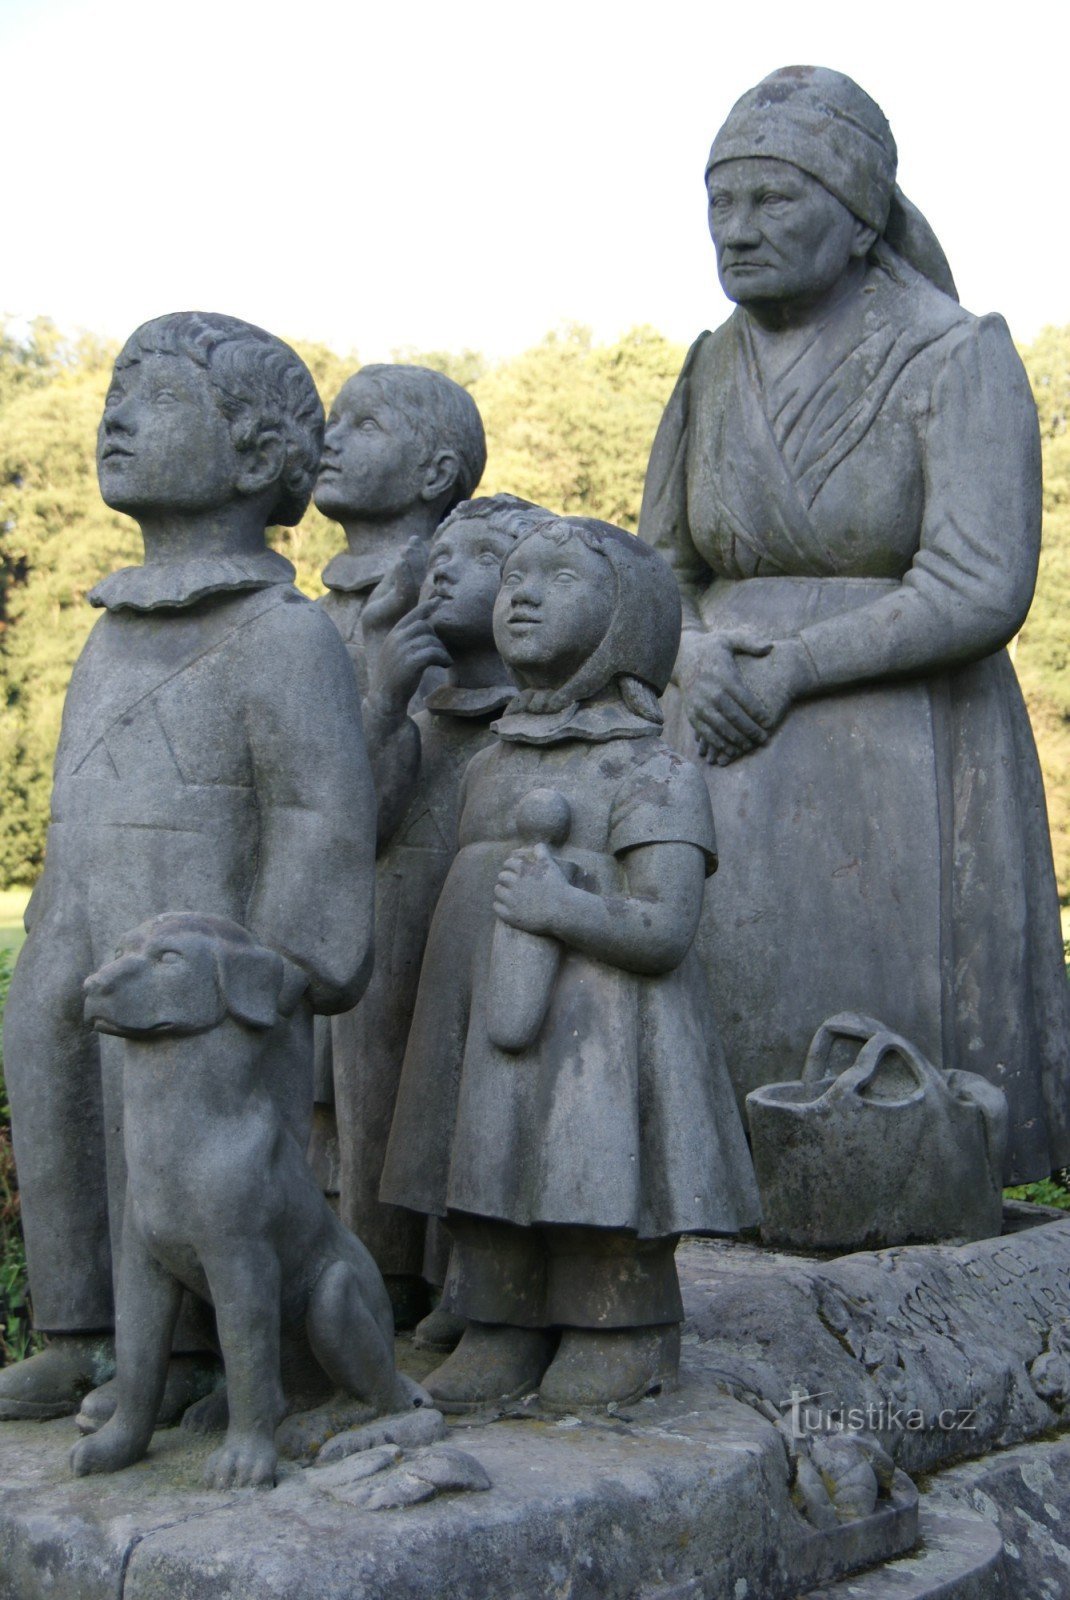 Vale da Avó - escultura Avó com netos